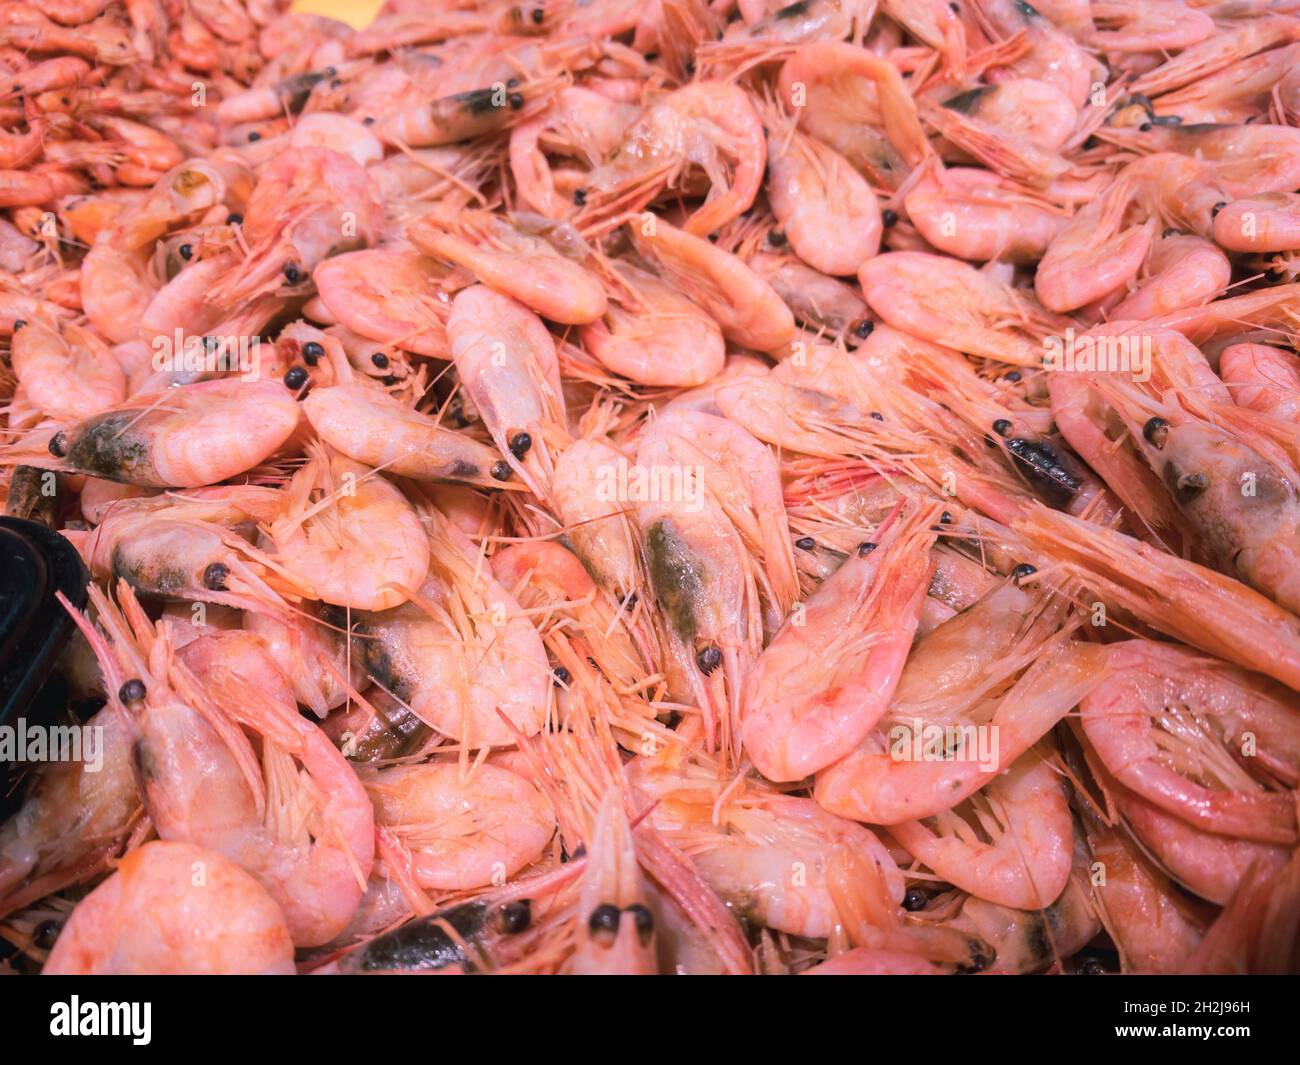 En el mostrador de un supermercado de mariscos se encuentran deliciosos  camarones rosados fríos y hervidos. Primer plano de camarones descongelados  de color rosa marino Fotografía de stock - Alamy